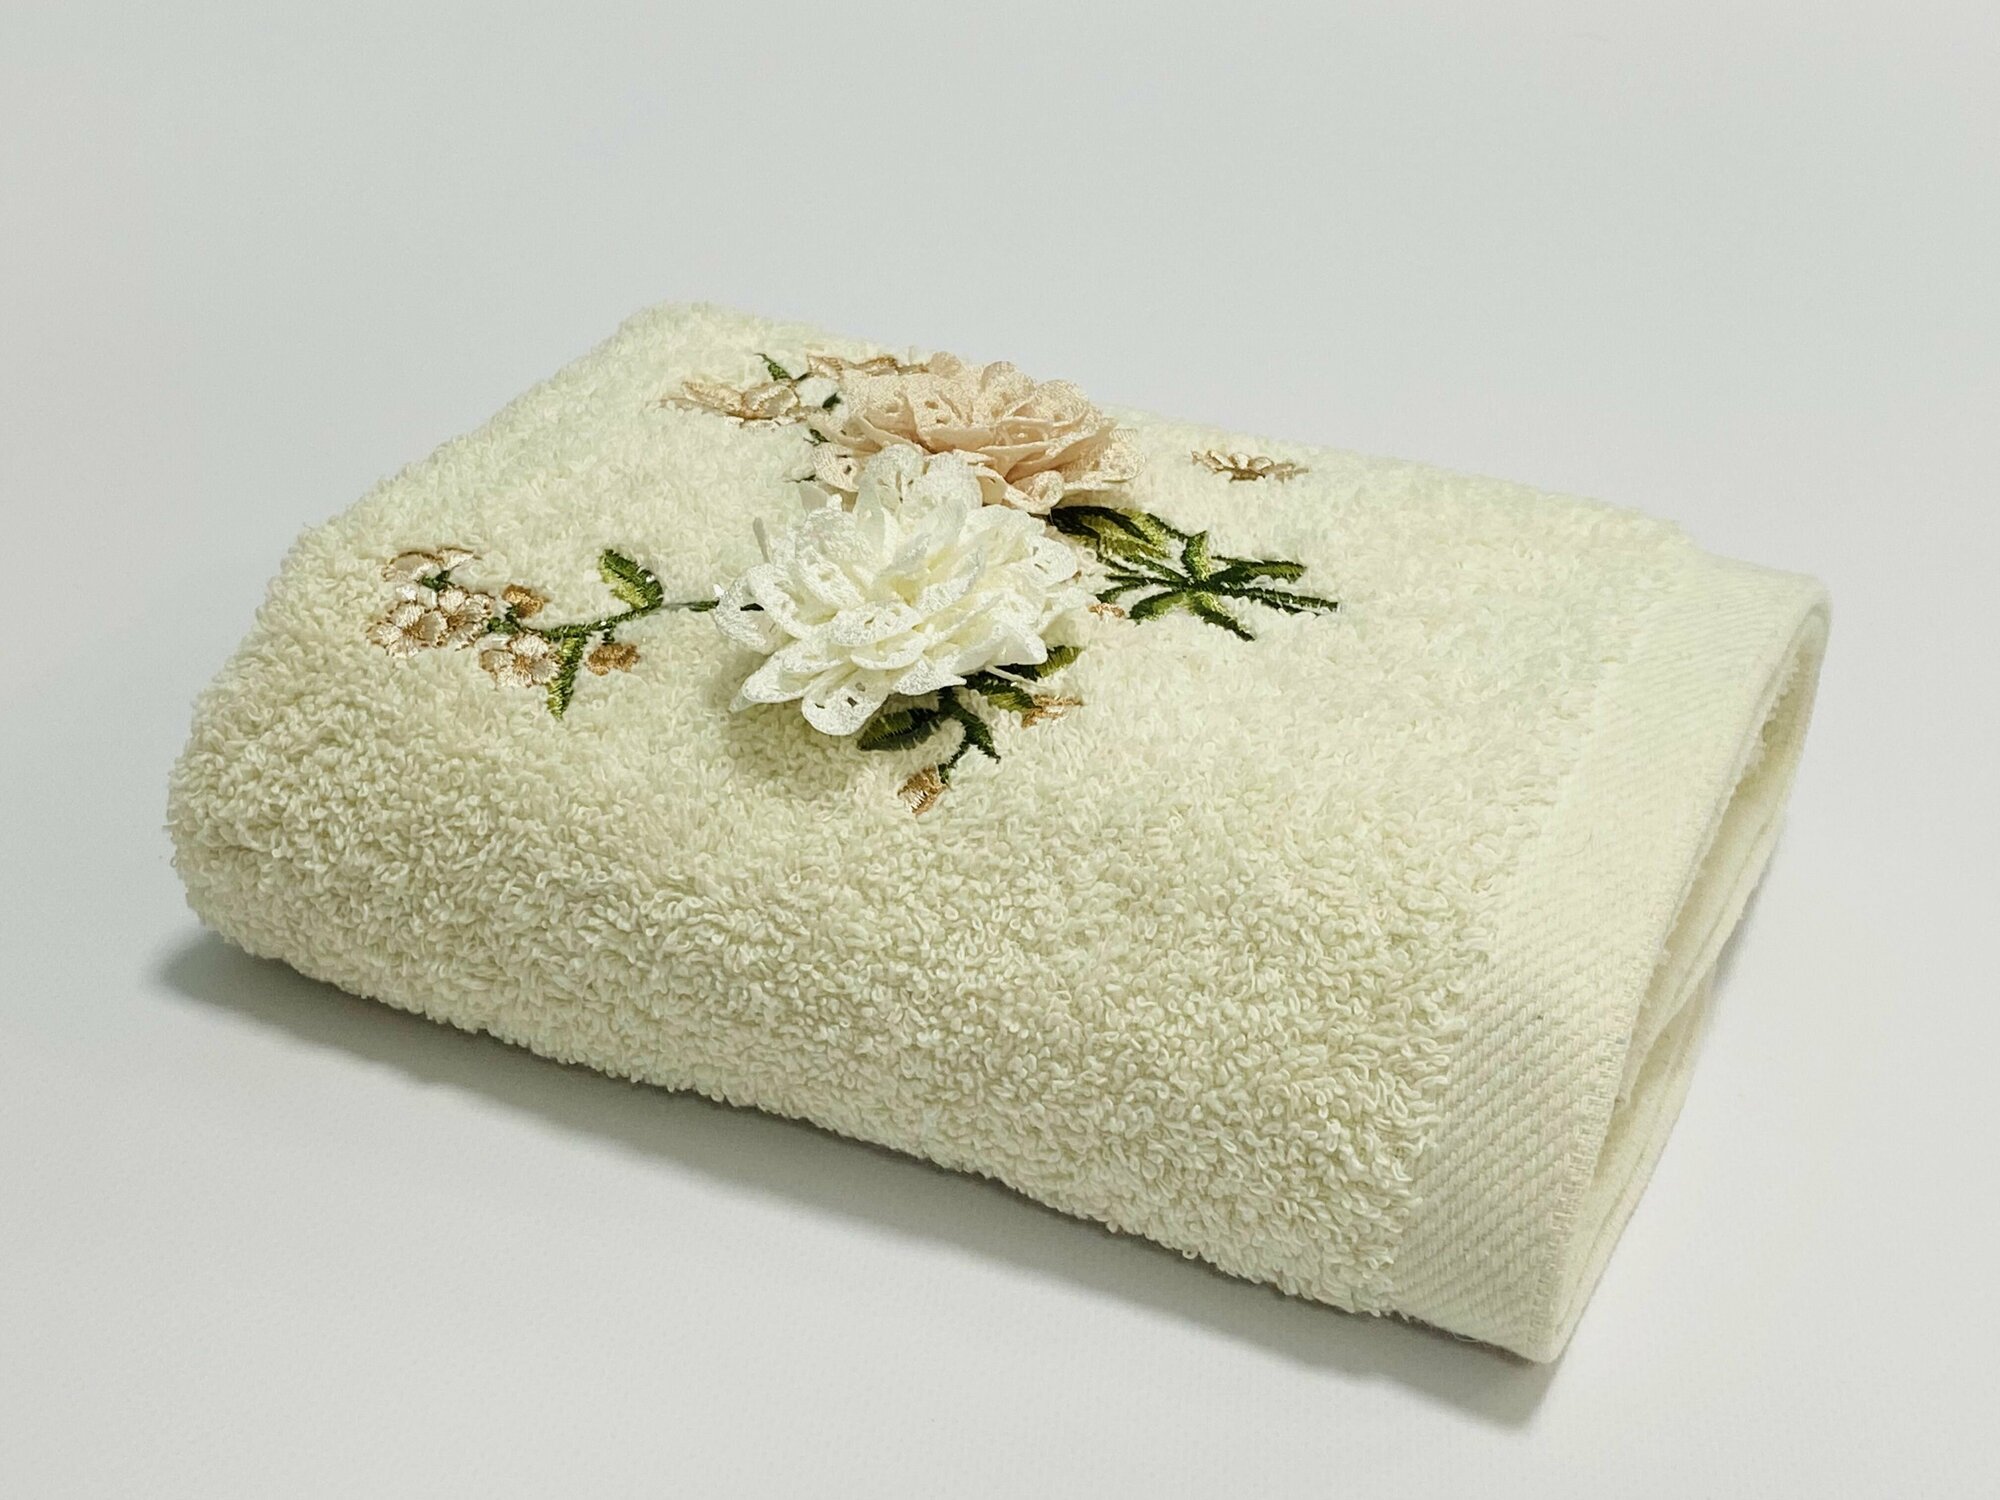 Полотенце Махровое для ванны в подарок женщине на 8 марта, на День рождения Нежность 70х140 см Белое